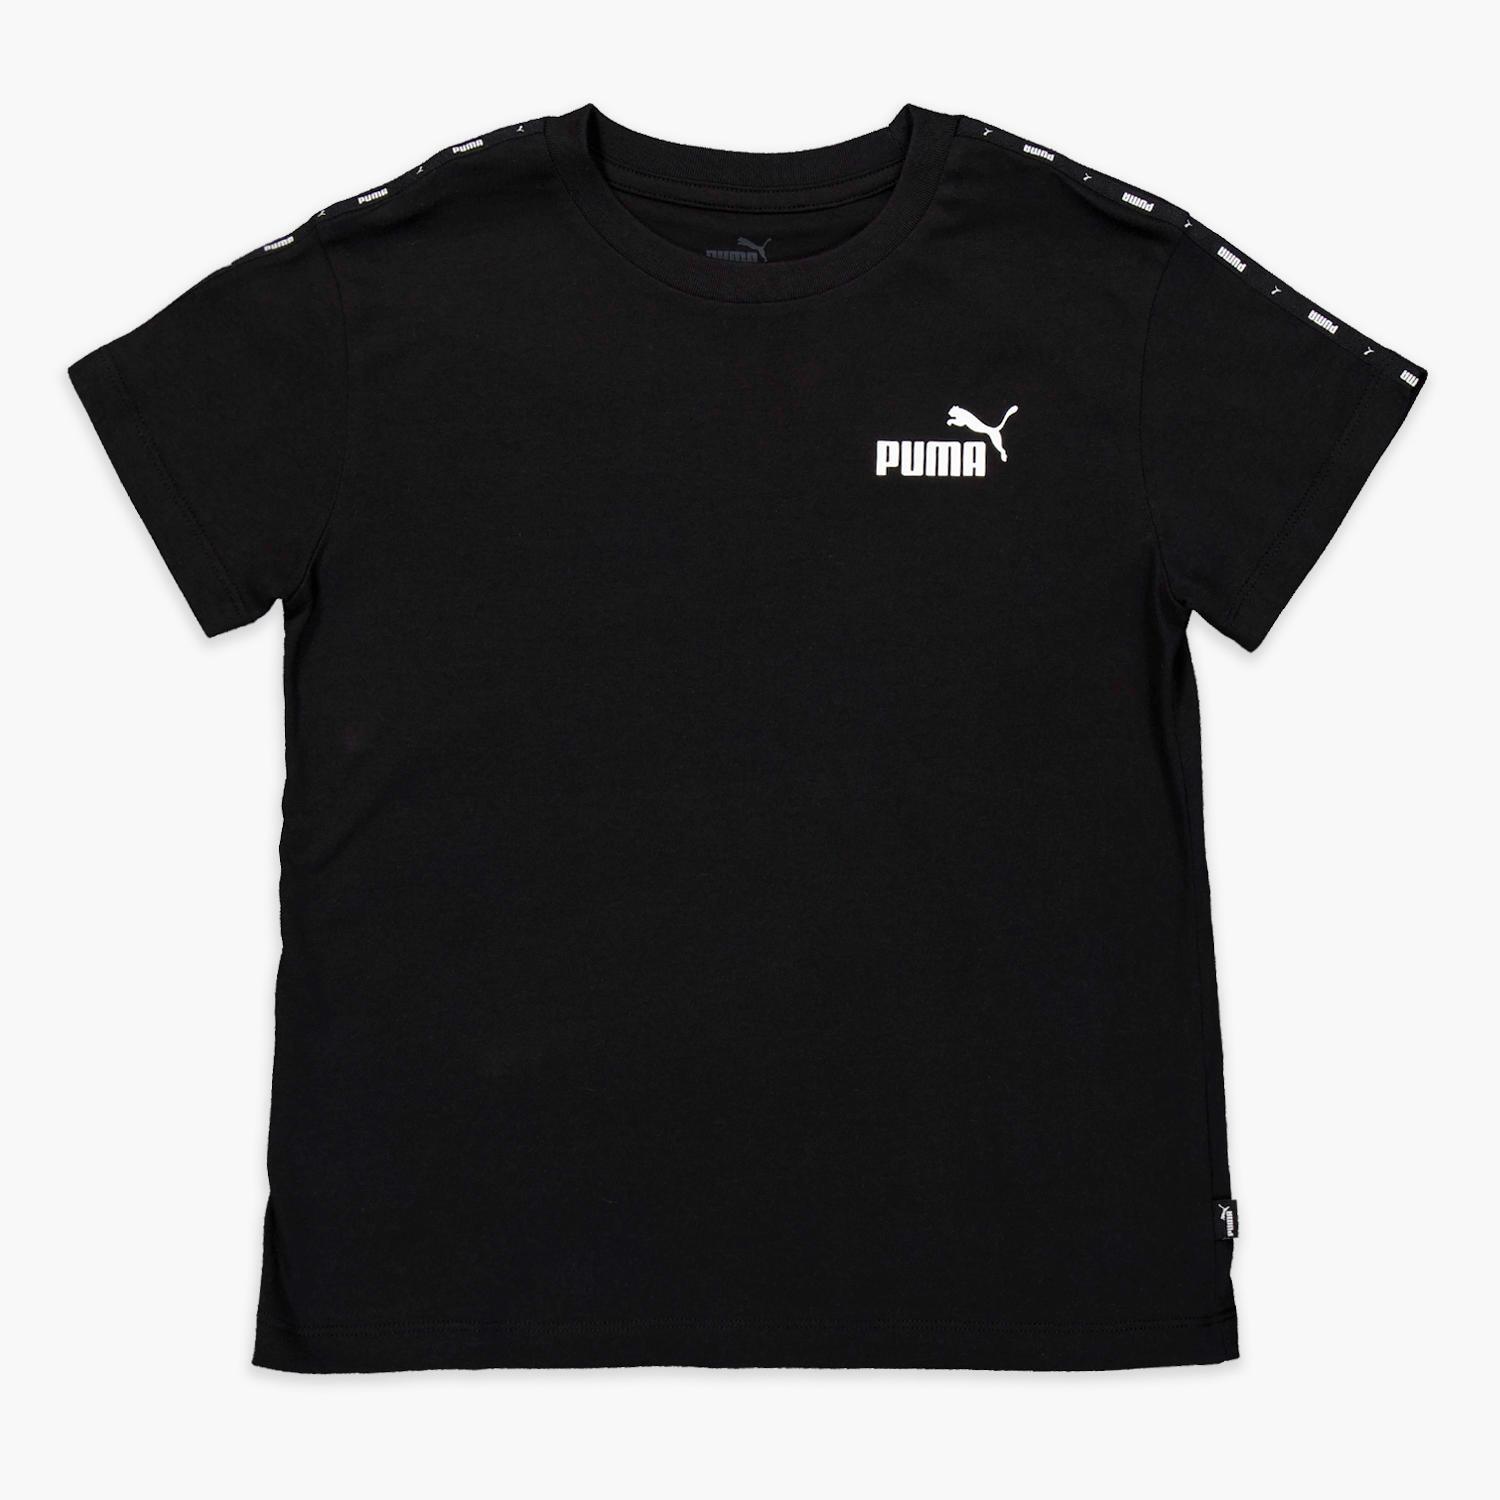 Puma T-shirt Zwart T-shirt